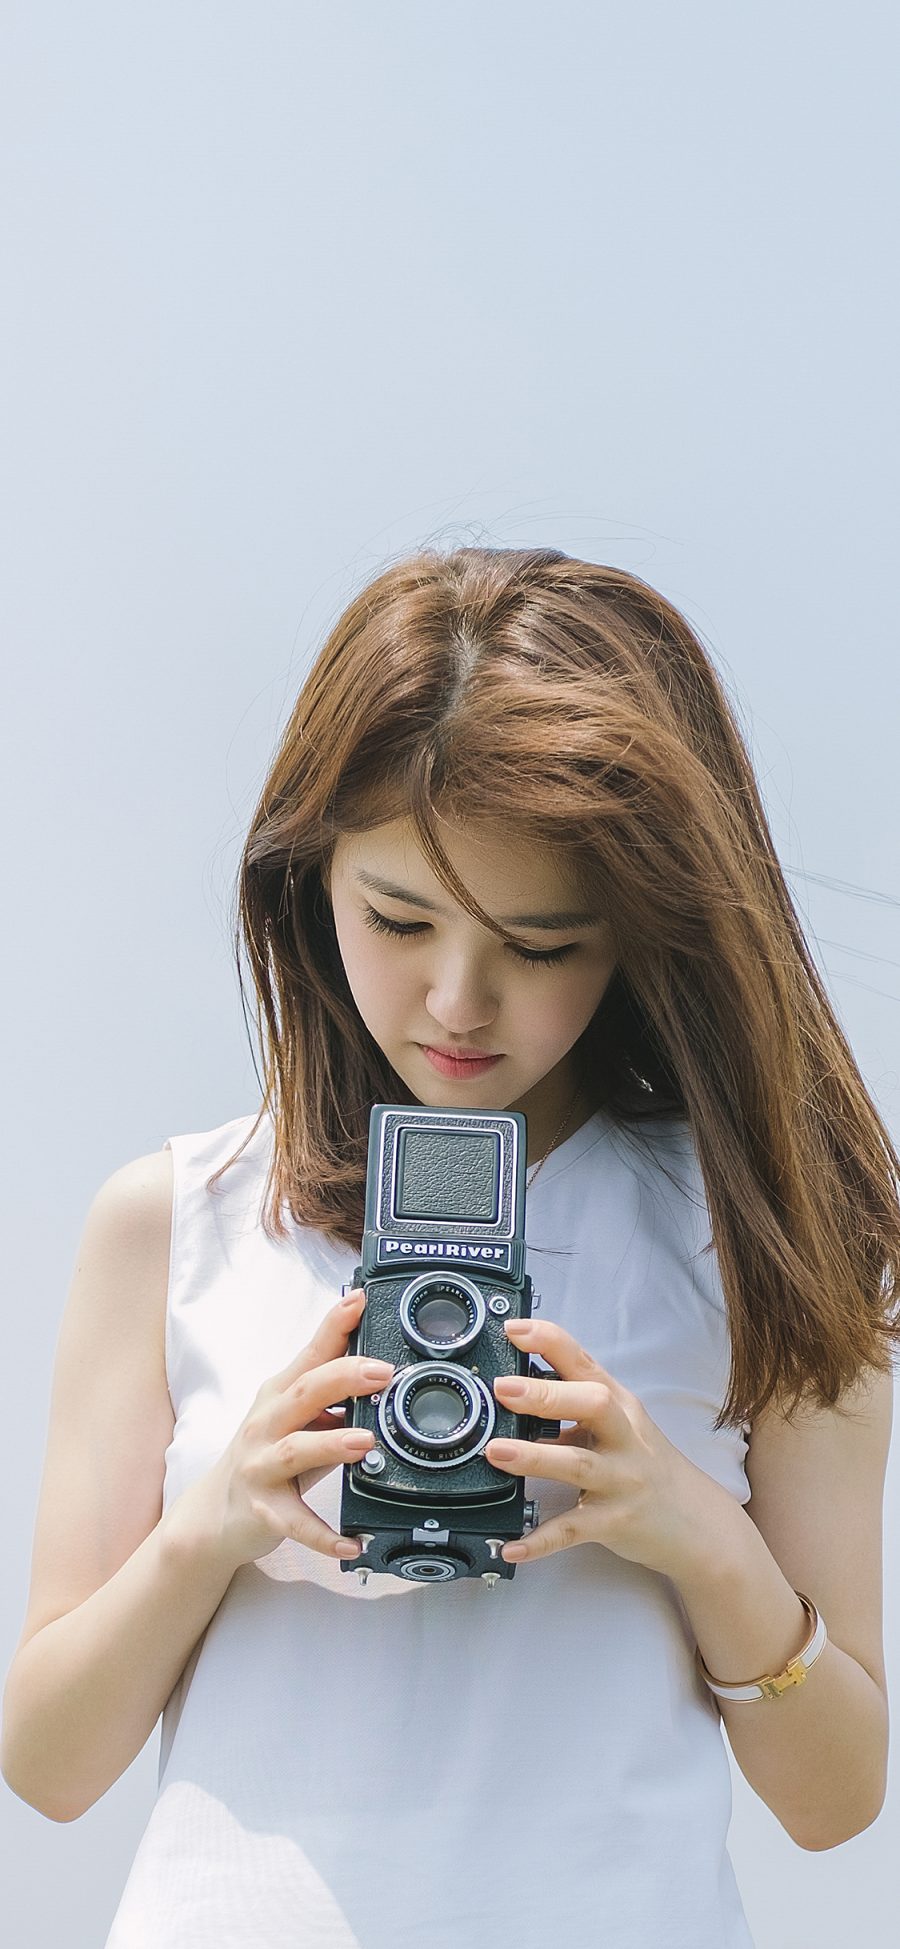 [2436×1125]文艺范 小清新 摄影 女孩 双反相机 苹果手机美女壁纸图片